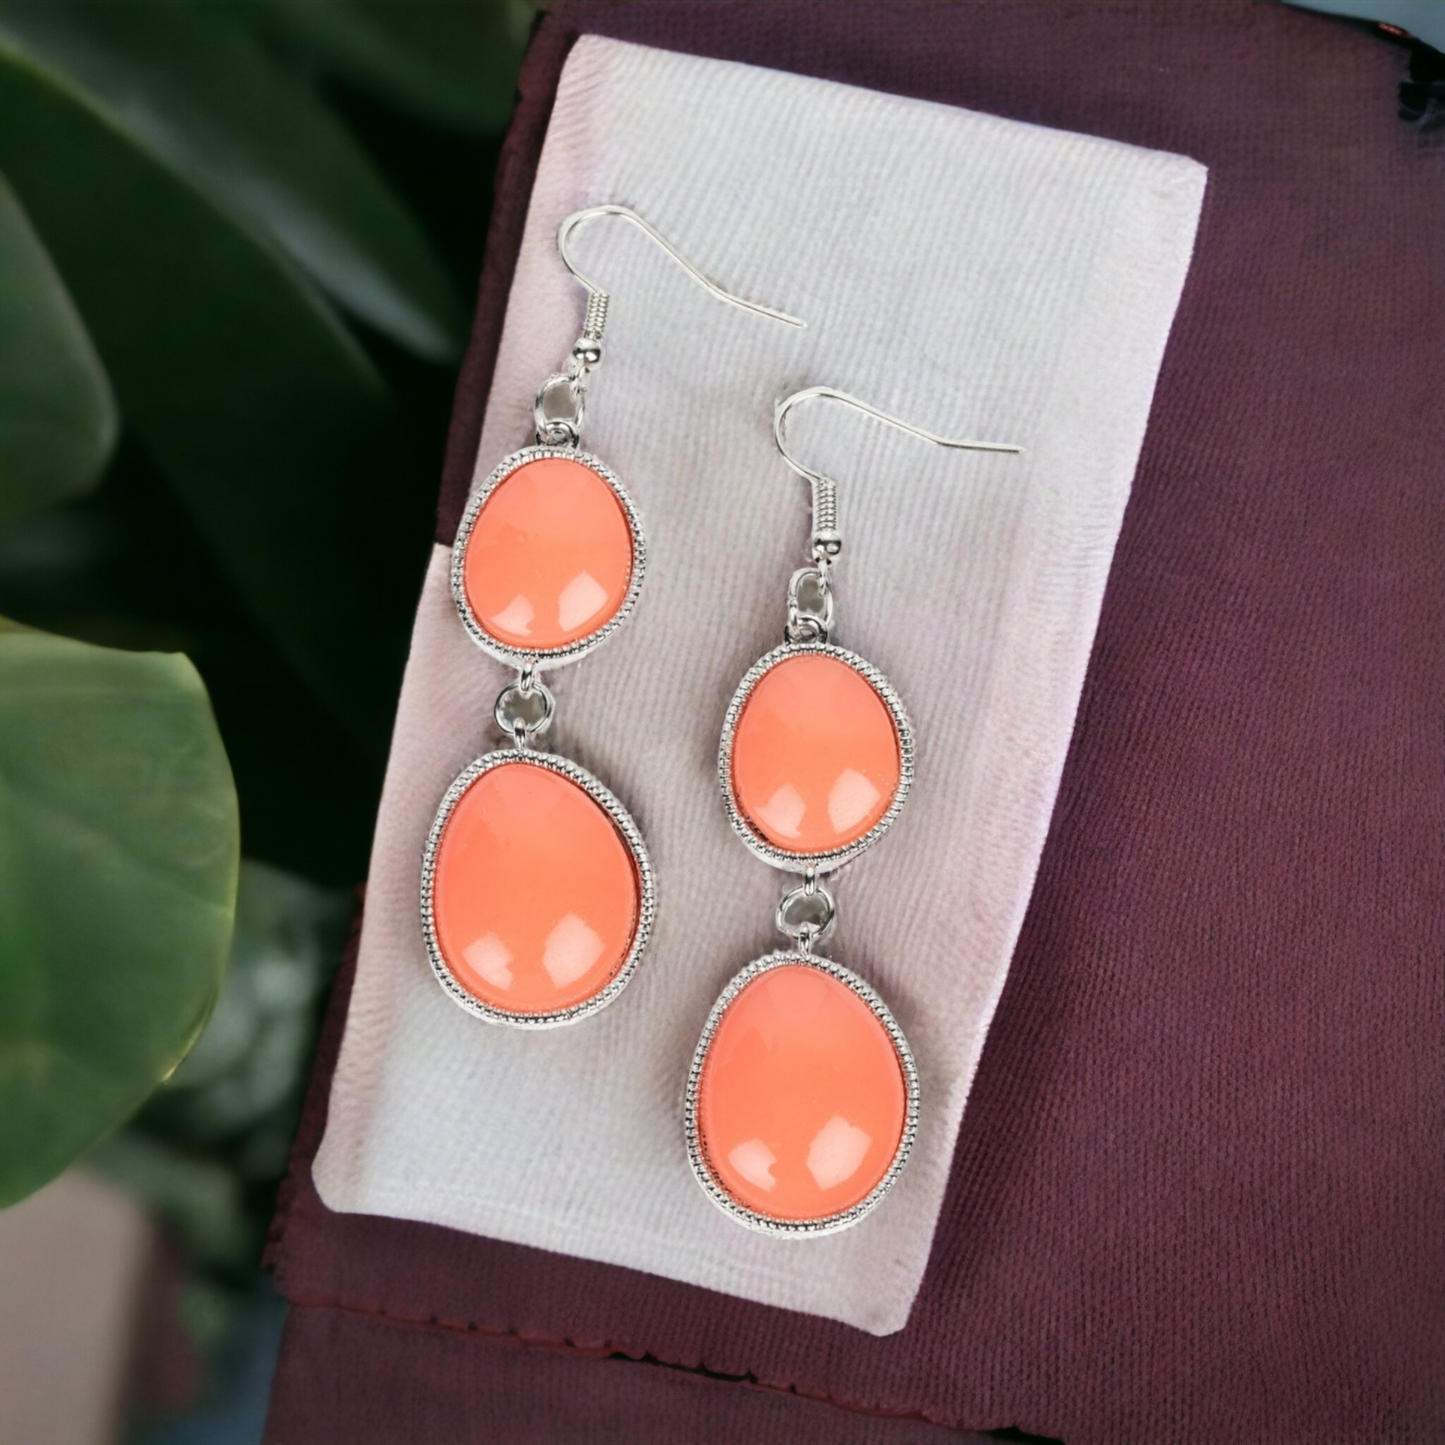 Mediterranean Myth - Orange Earrings - Bling by Danielle Baker